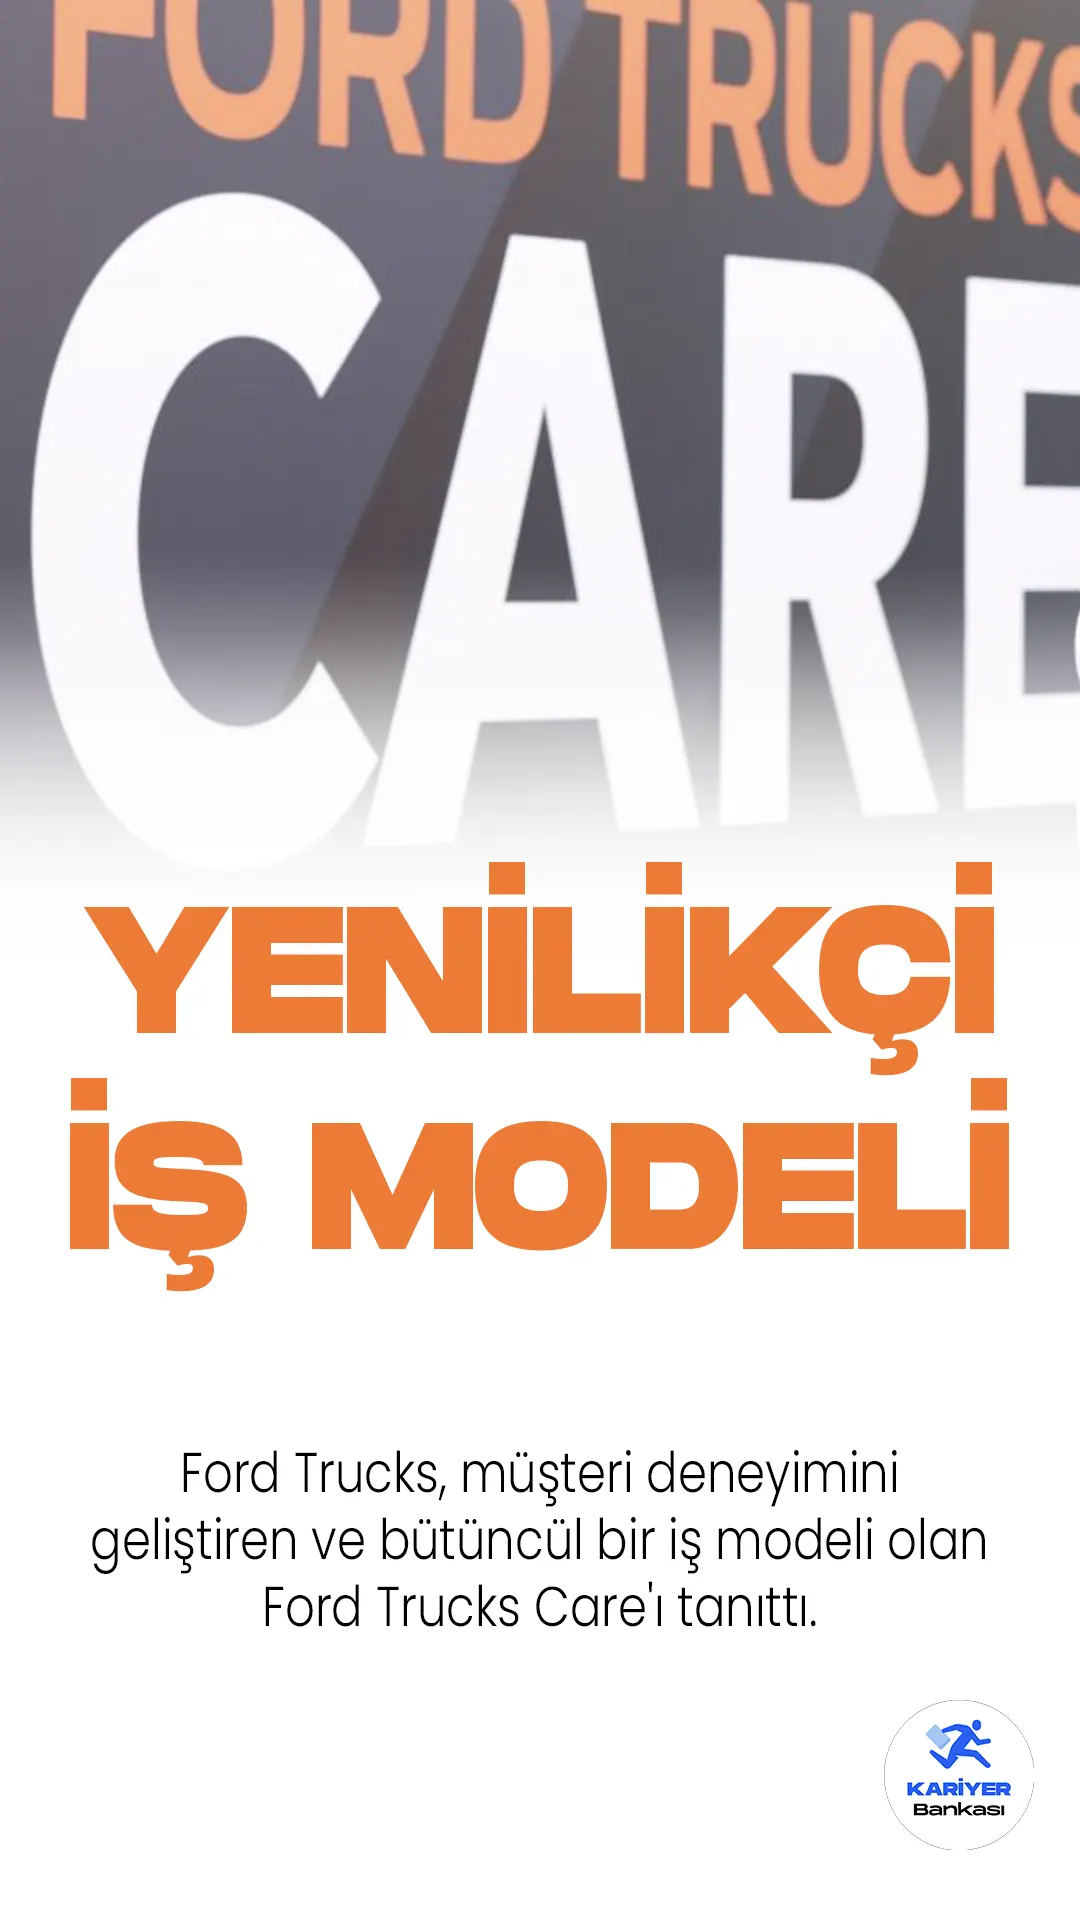 Ford Trucks, müşteri deneyimini geliştiren ve bütüncül bir iş modeli olan Ford Trucks Care'ı tanıttı.